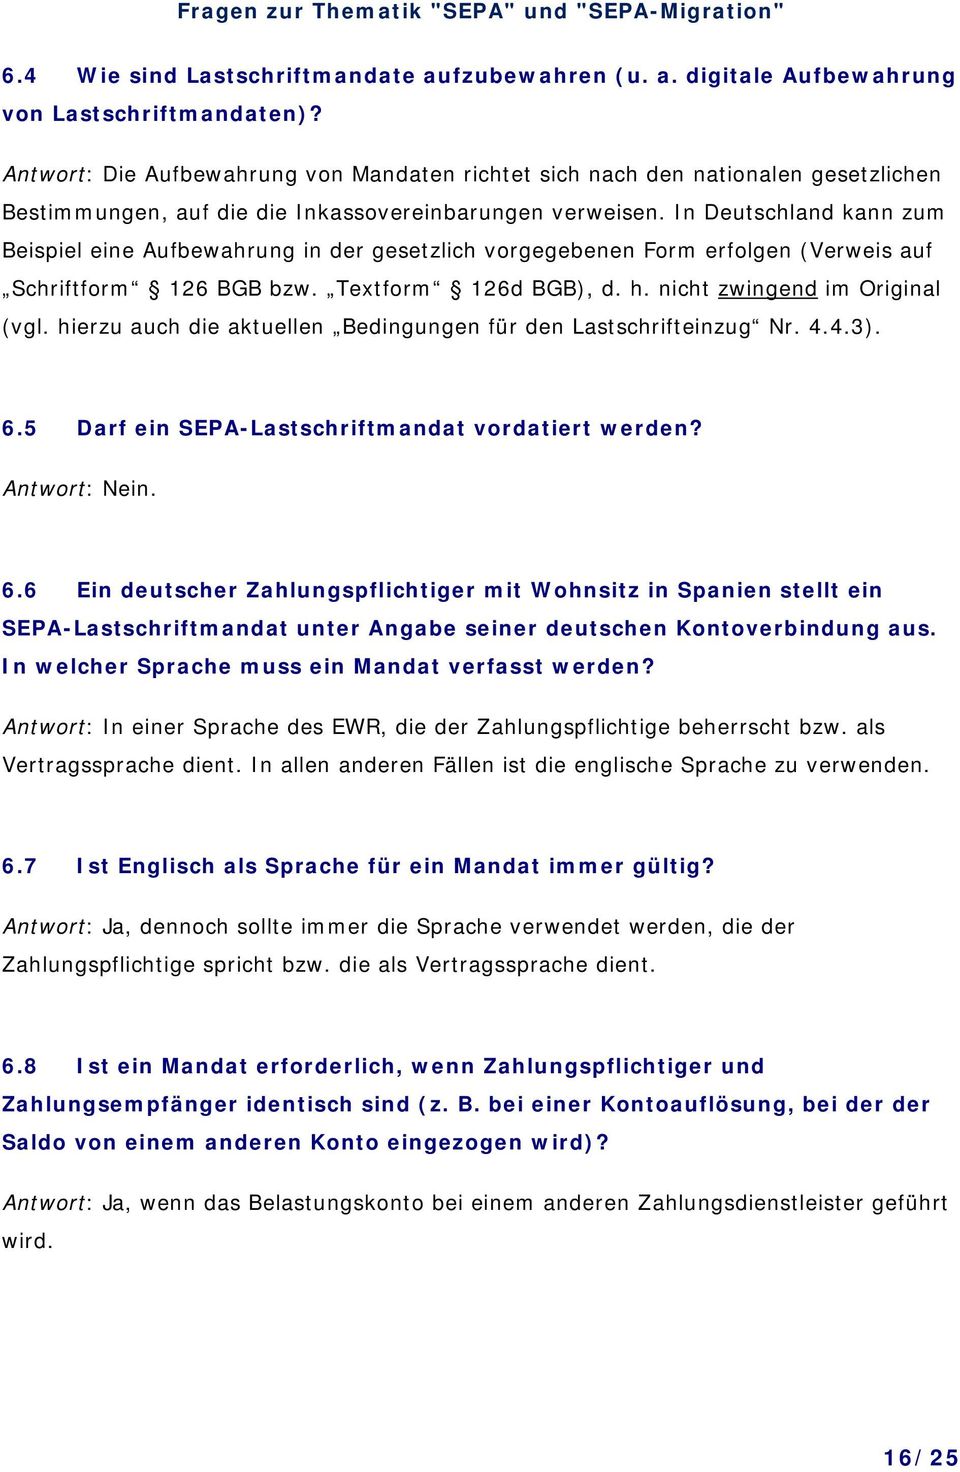 In Deutschland kann zum Beispiel eine Aufbewahrung in der gesetzlich vorgegebenen Form erfolgen (Verweis auf Schriftform 126 BGB bzw. Textform 126d BGB), d. h. nicht zwingend im Original (vgl.